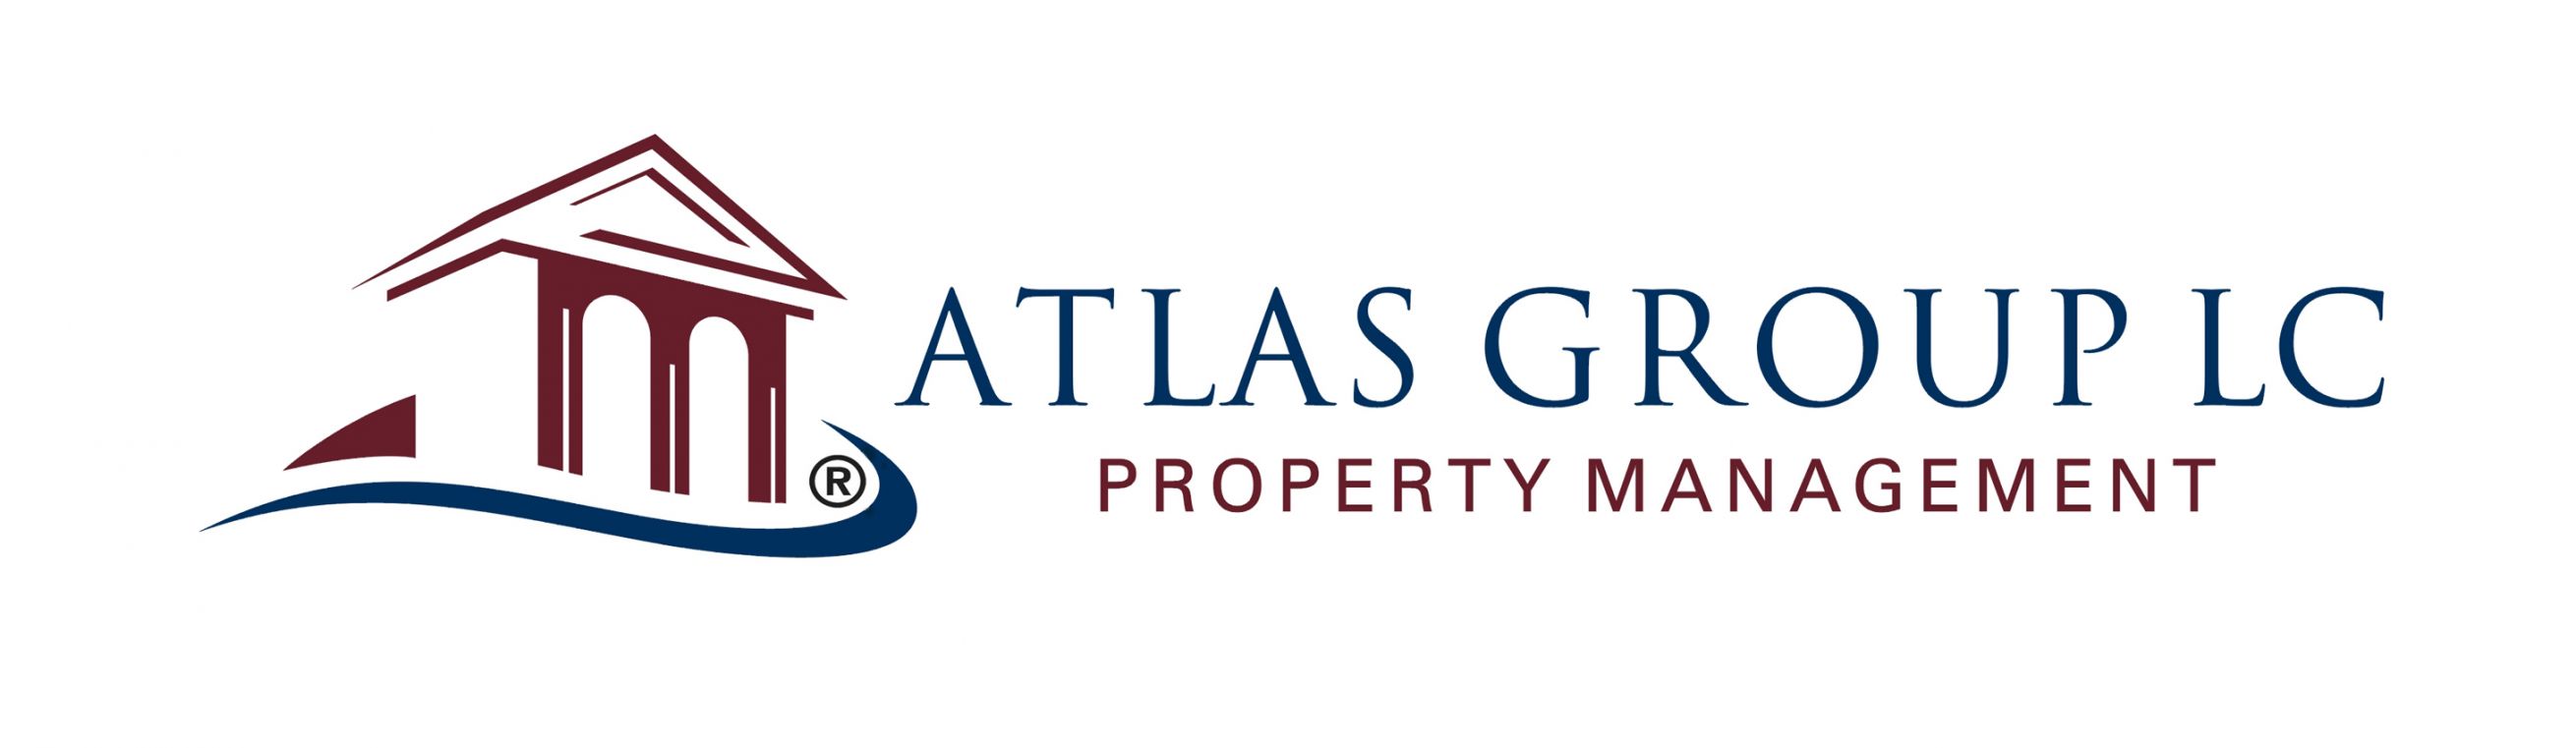 Atlas Group LC - Las Vegas Property Management Logo